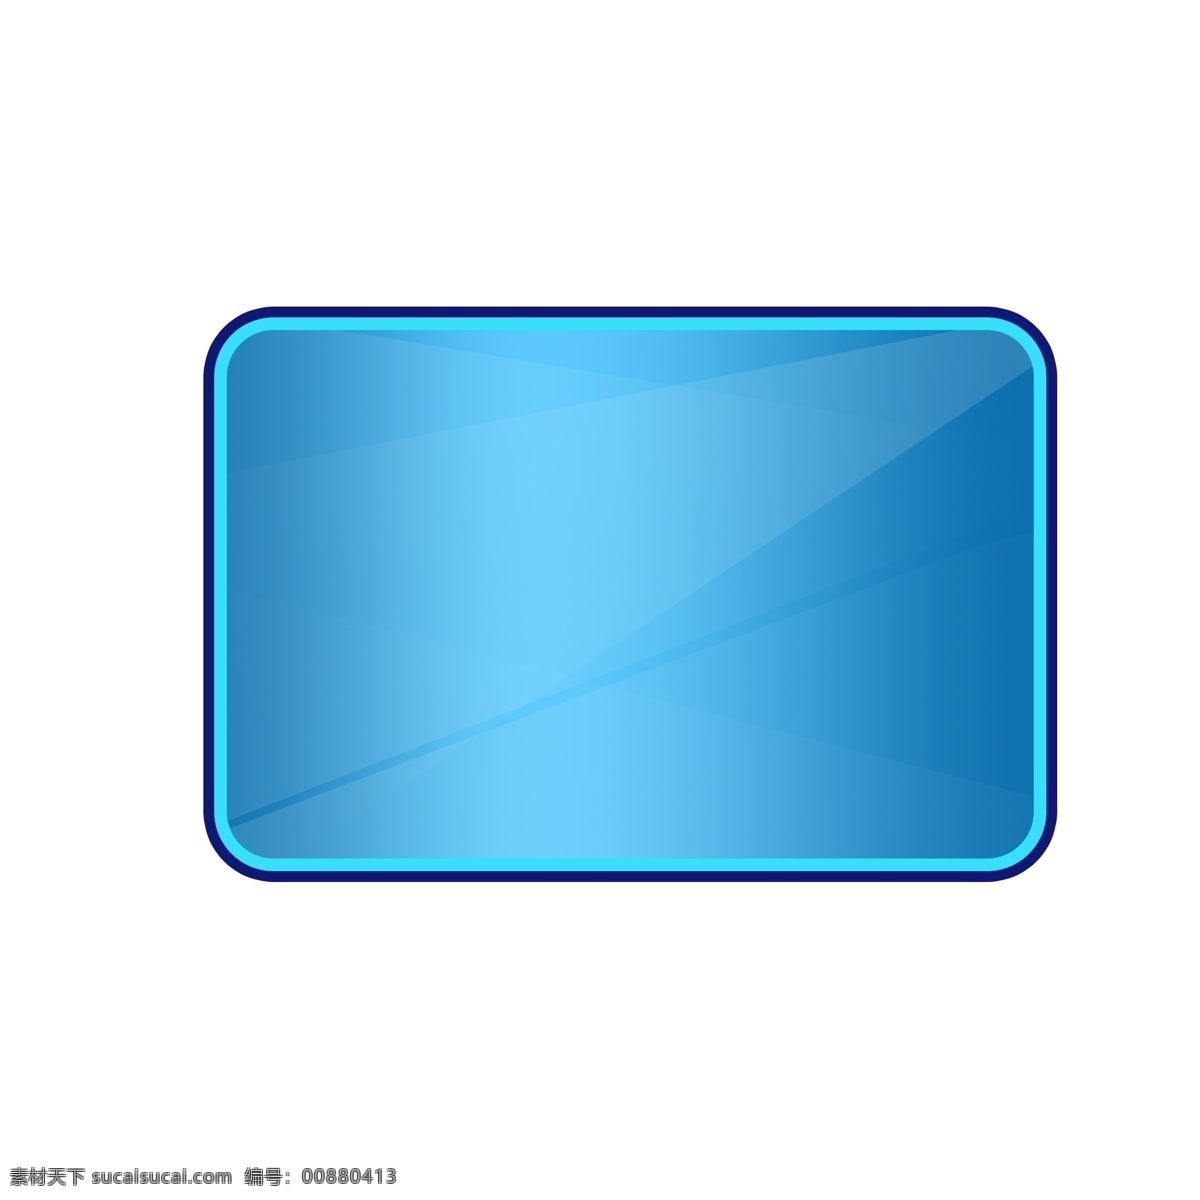 深蓝色边框 边框素材 边框元素 宝石蓝 蓝宝石元素 玻璃 玻璃元素 玻璃素材 玻璃装饰 卡通玻璃 卡通元素 卡通素材 卡通装饰 边框 卡通边框 元素设计 分层